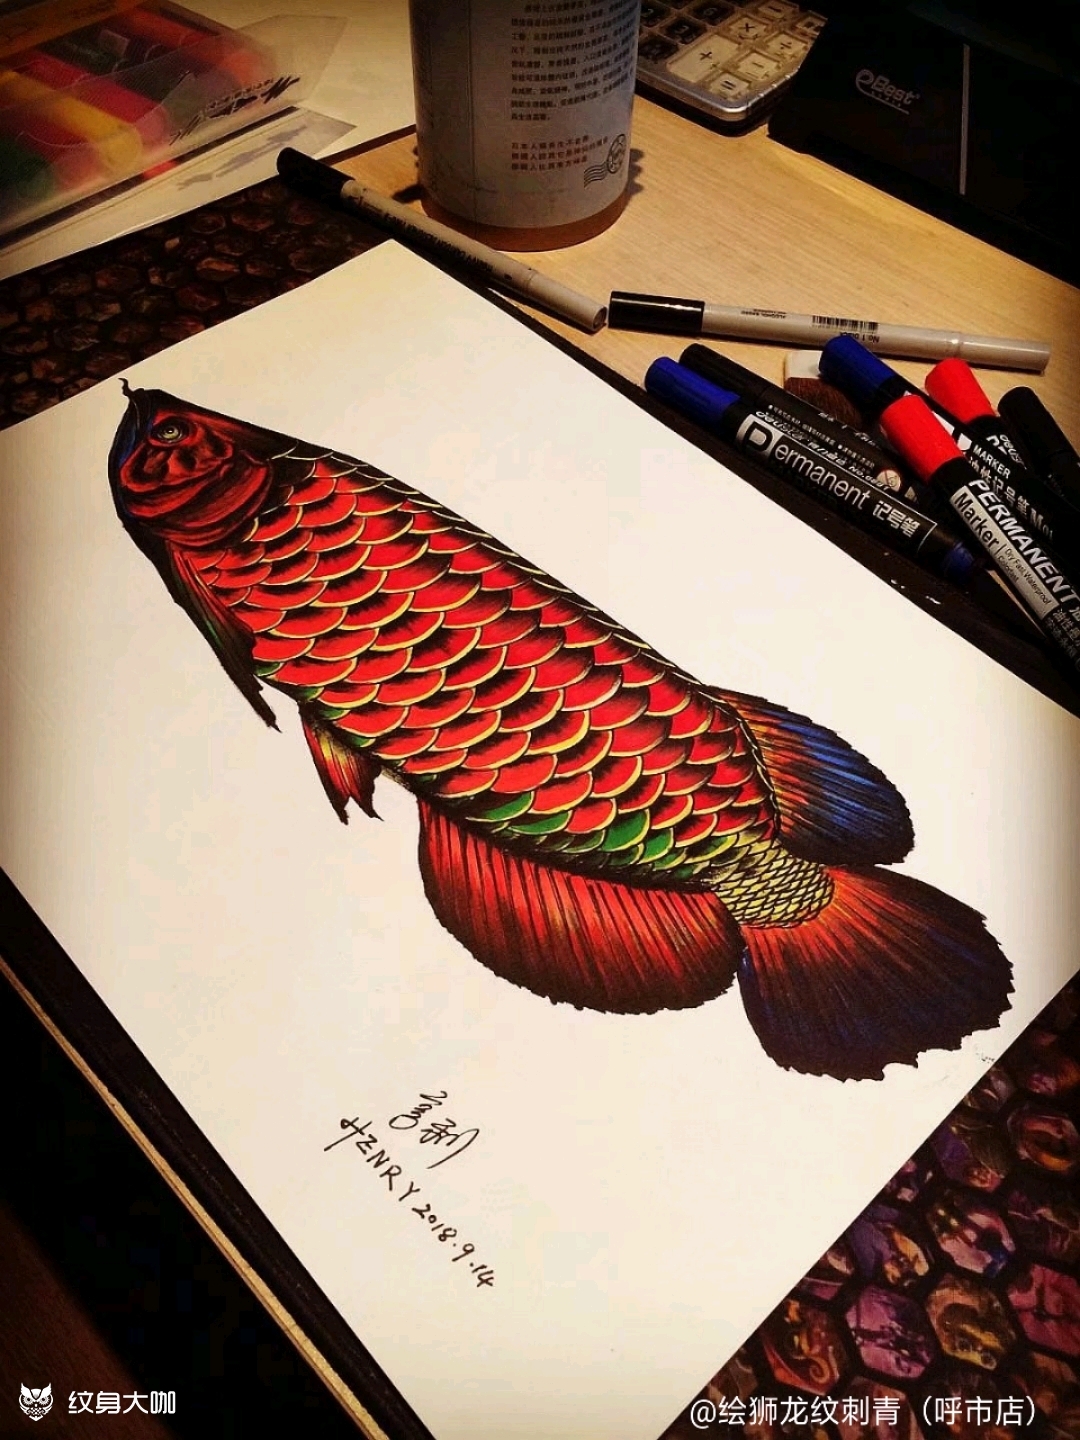 红龙鱼_纹身图案手稿图片_亨利(henry)的纹身作品集